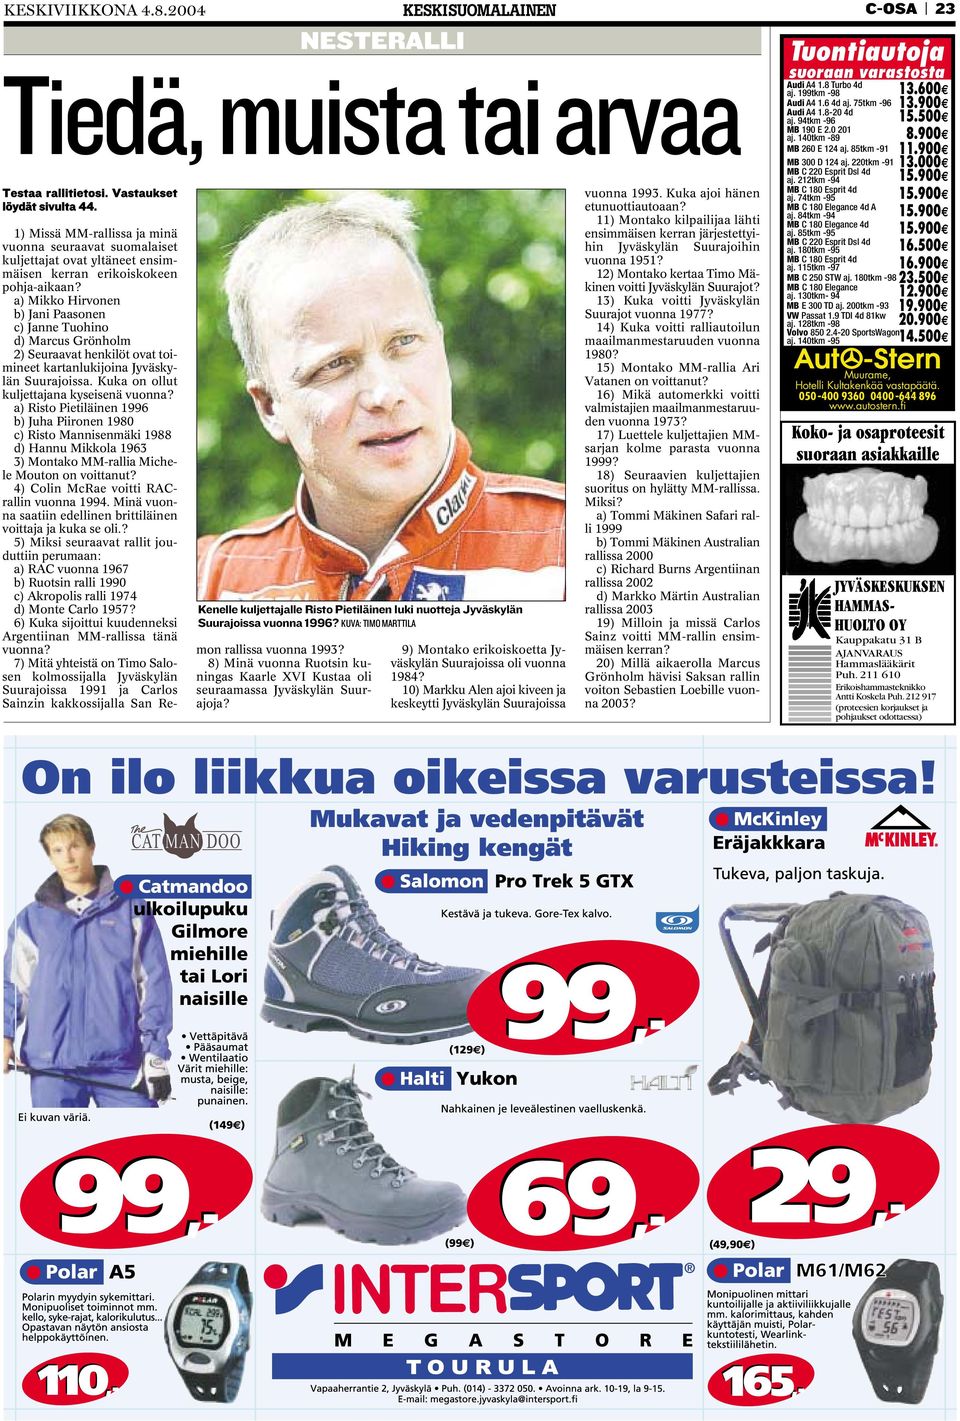 Kenelle kuljettajalle Risto Pietiläinen luki nuotteja Jyväskylän Suurajoissa vuonna 1996?